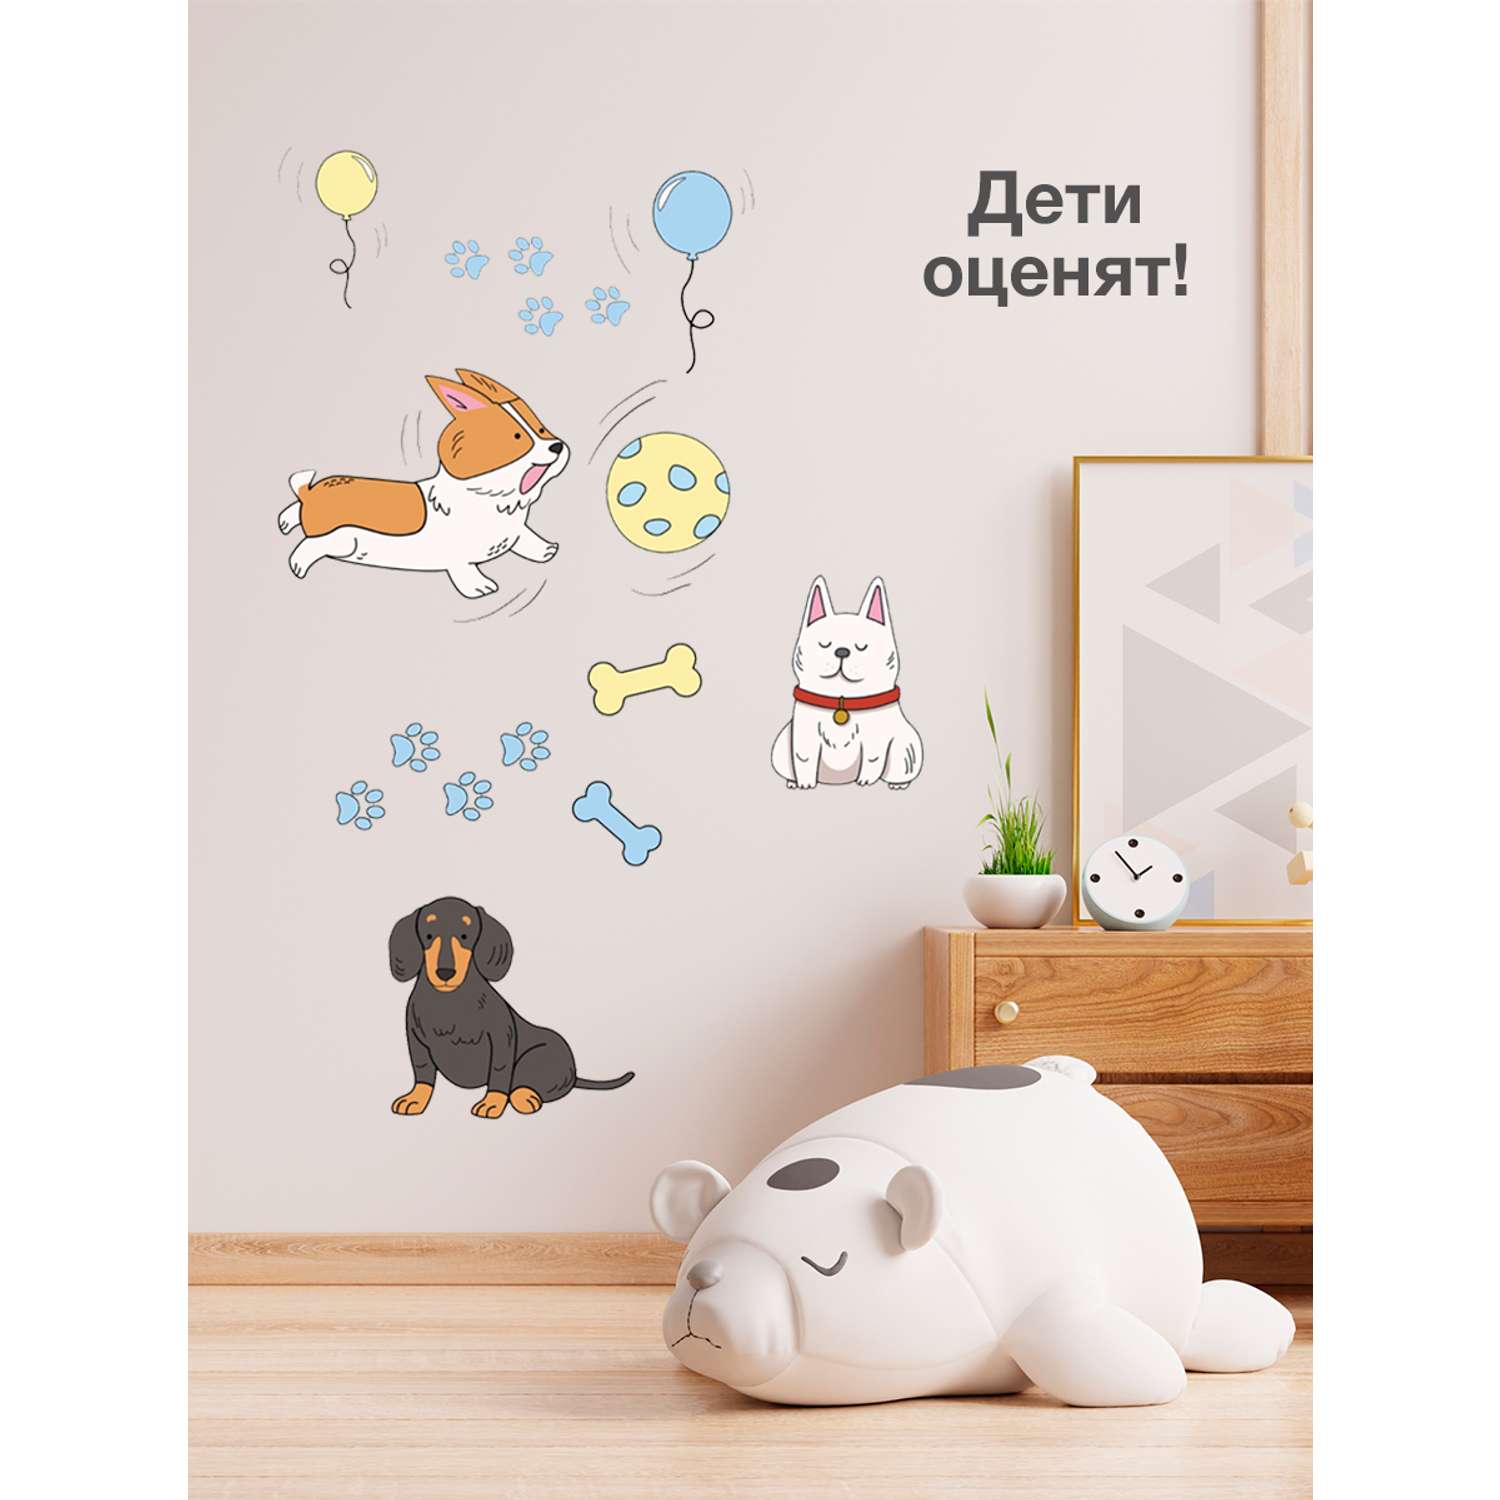 Наклейка оформительская ГК Горчаков на стену в детскую комнату с рисунком собачки для декора - фото 8